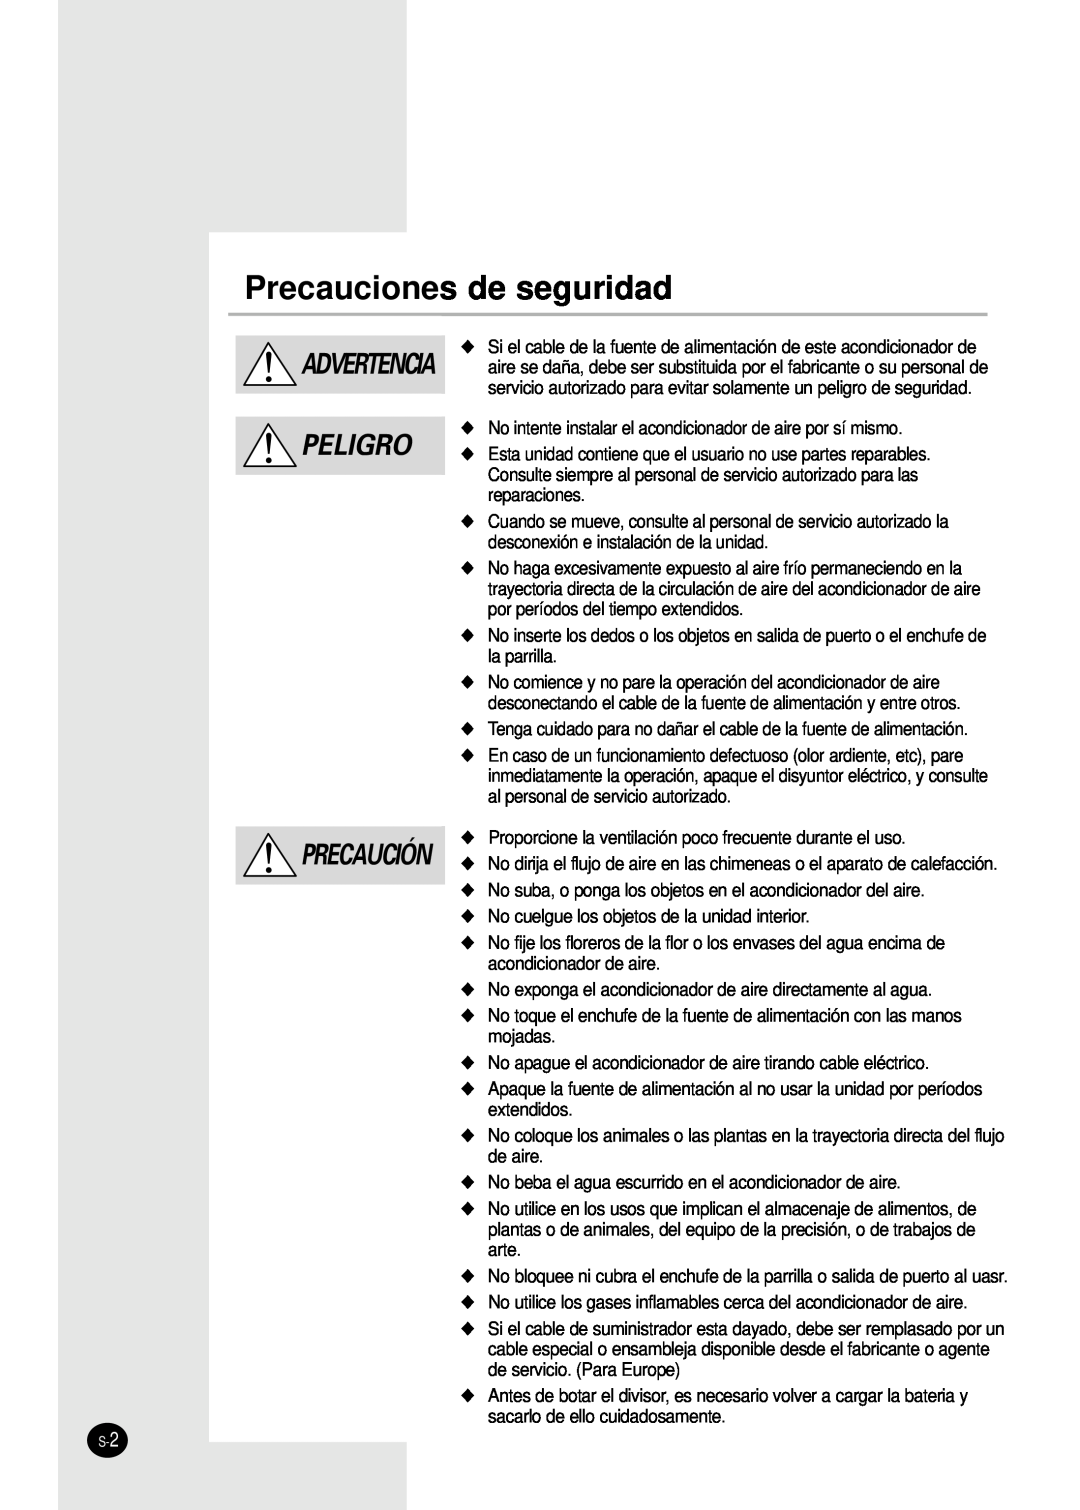 Samsung AS18S0GB, AS12SGGB manual Precauciones de seguridad, Advertencia Peligro Precaución 